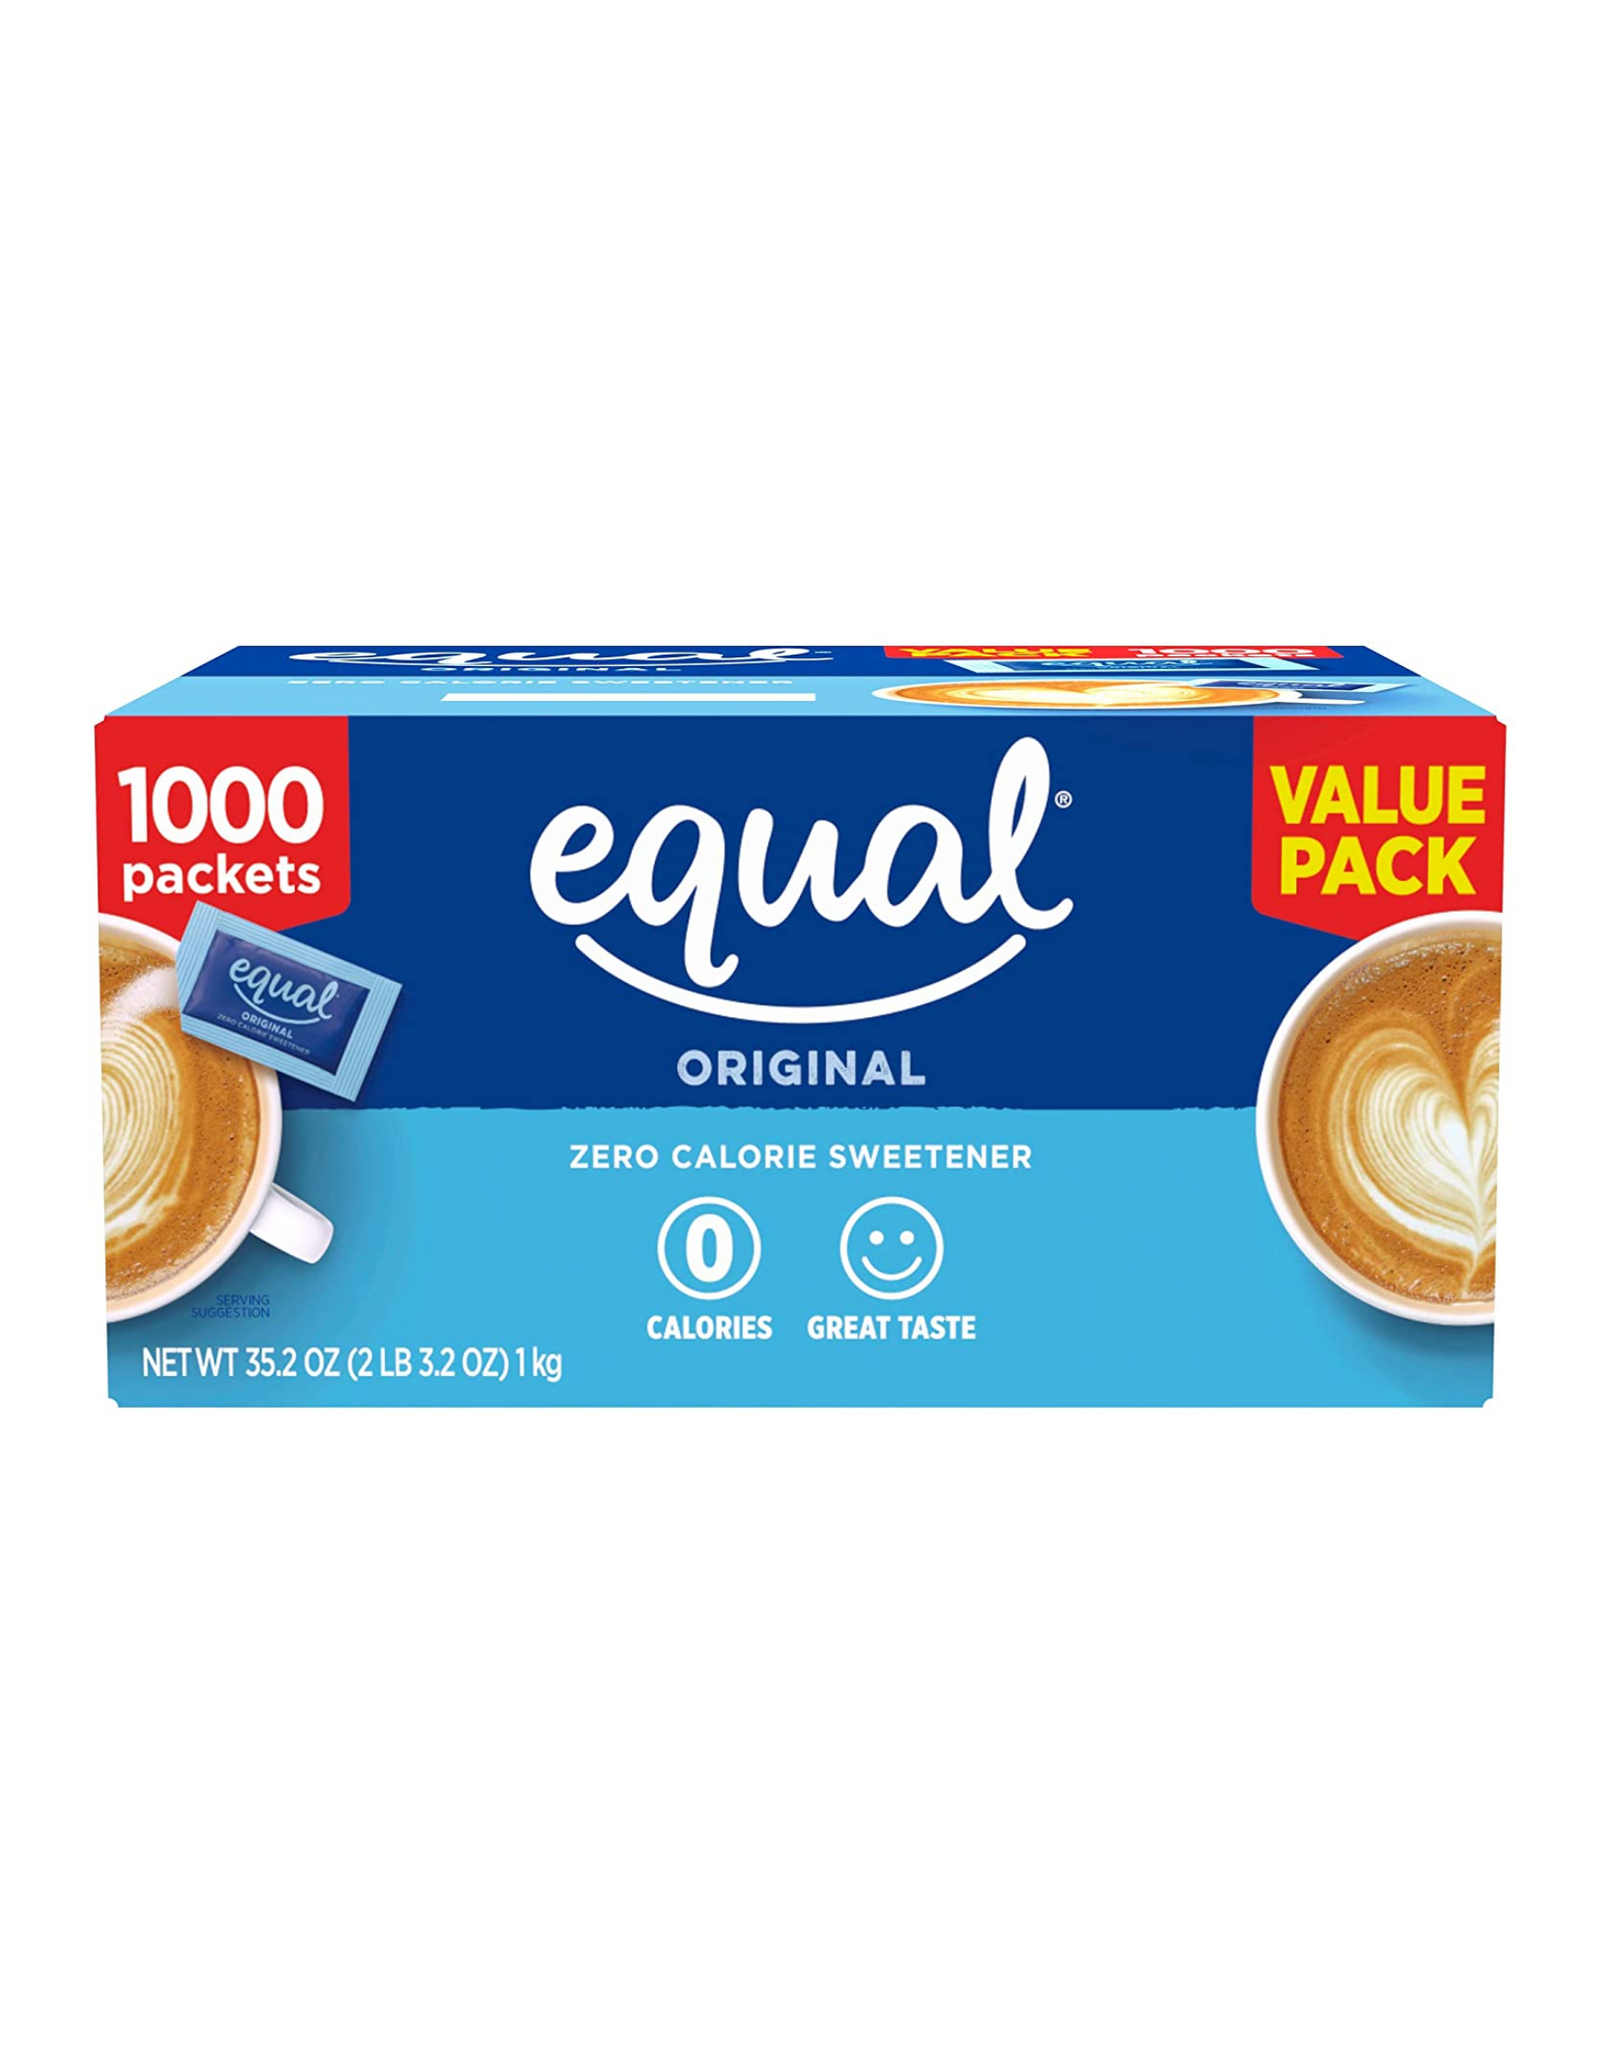 EQUAL Original Zero Calorie Sweetener, Great Taste Value Pack, 1000 Ct